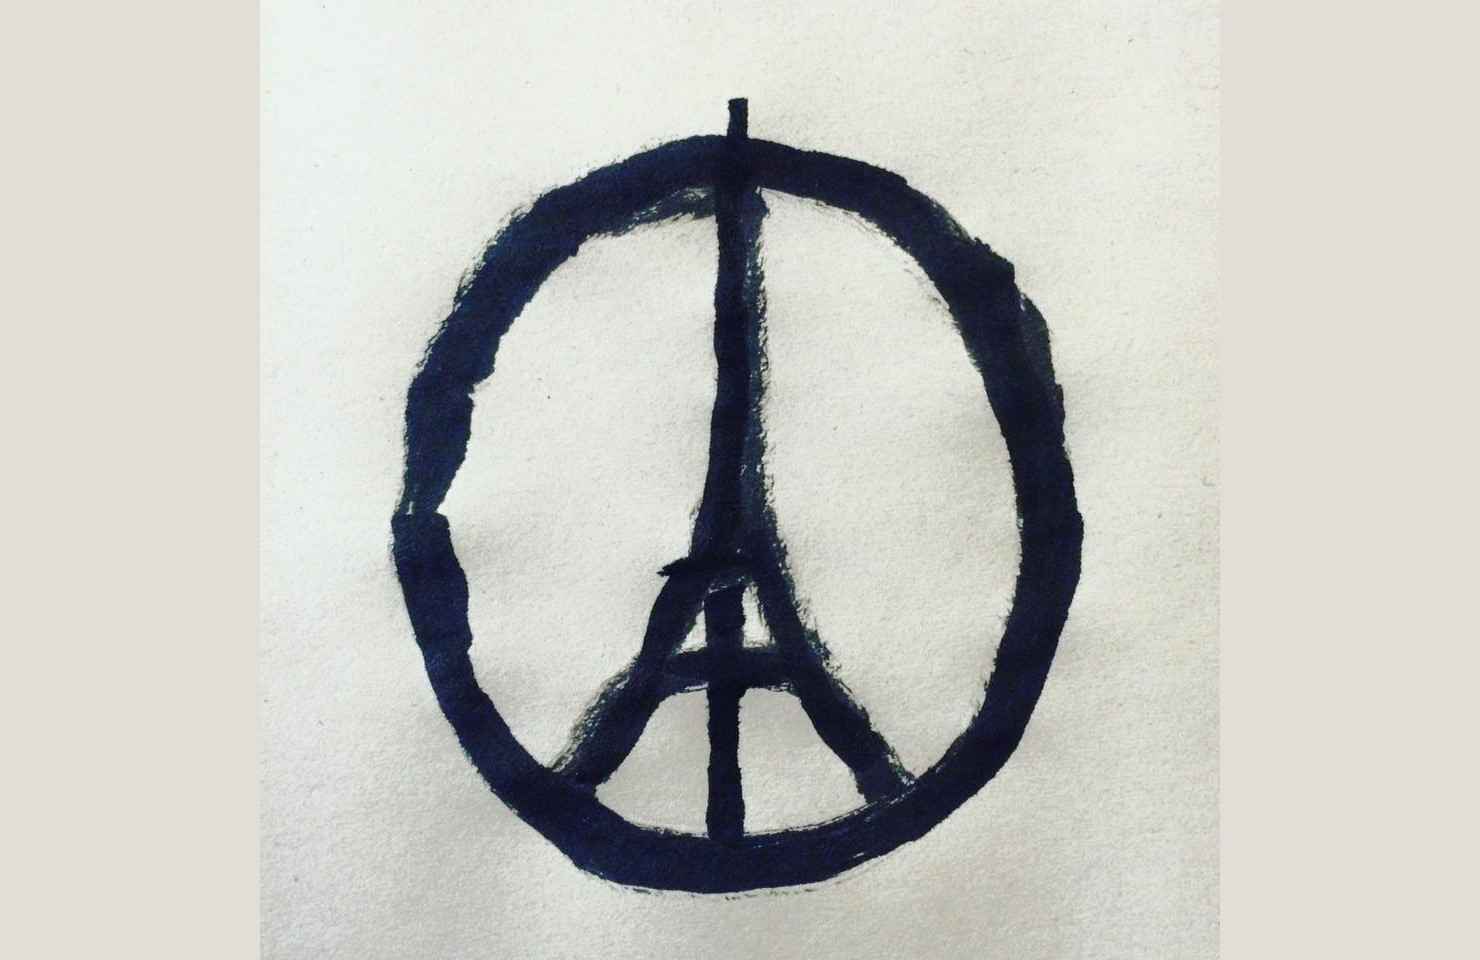 2048x1536 fit dessin peace for paris realise apres attentats 13 novembre 2015 artiste francais jean jullien 1